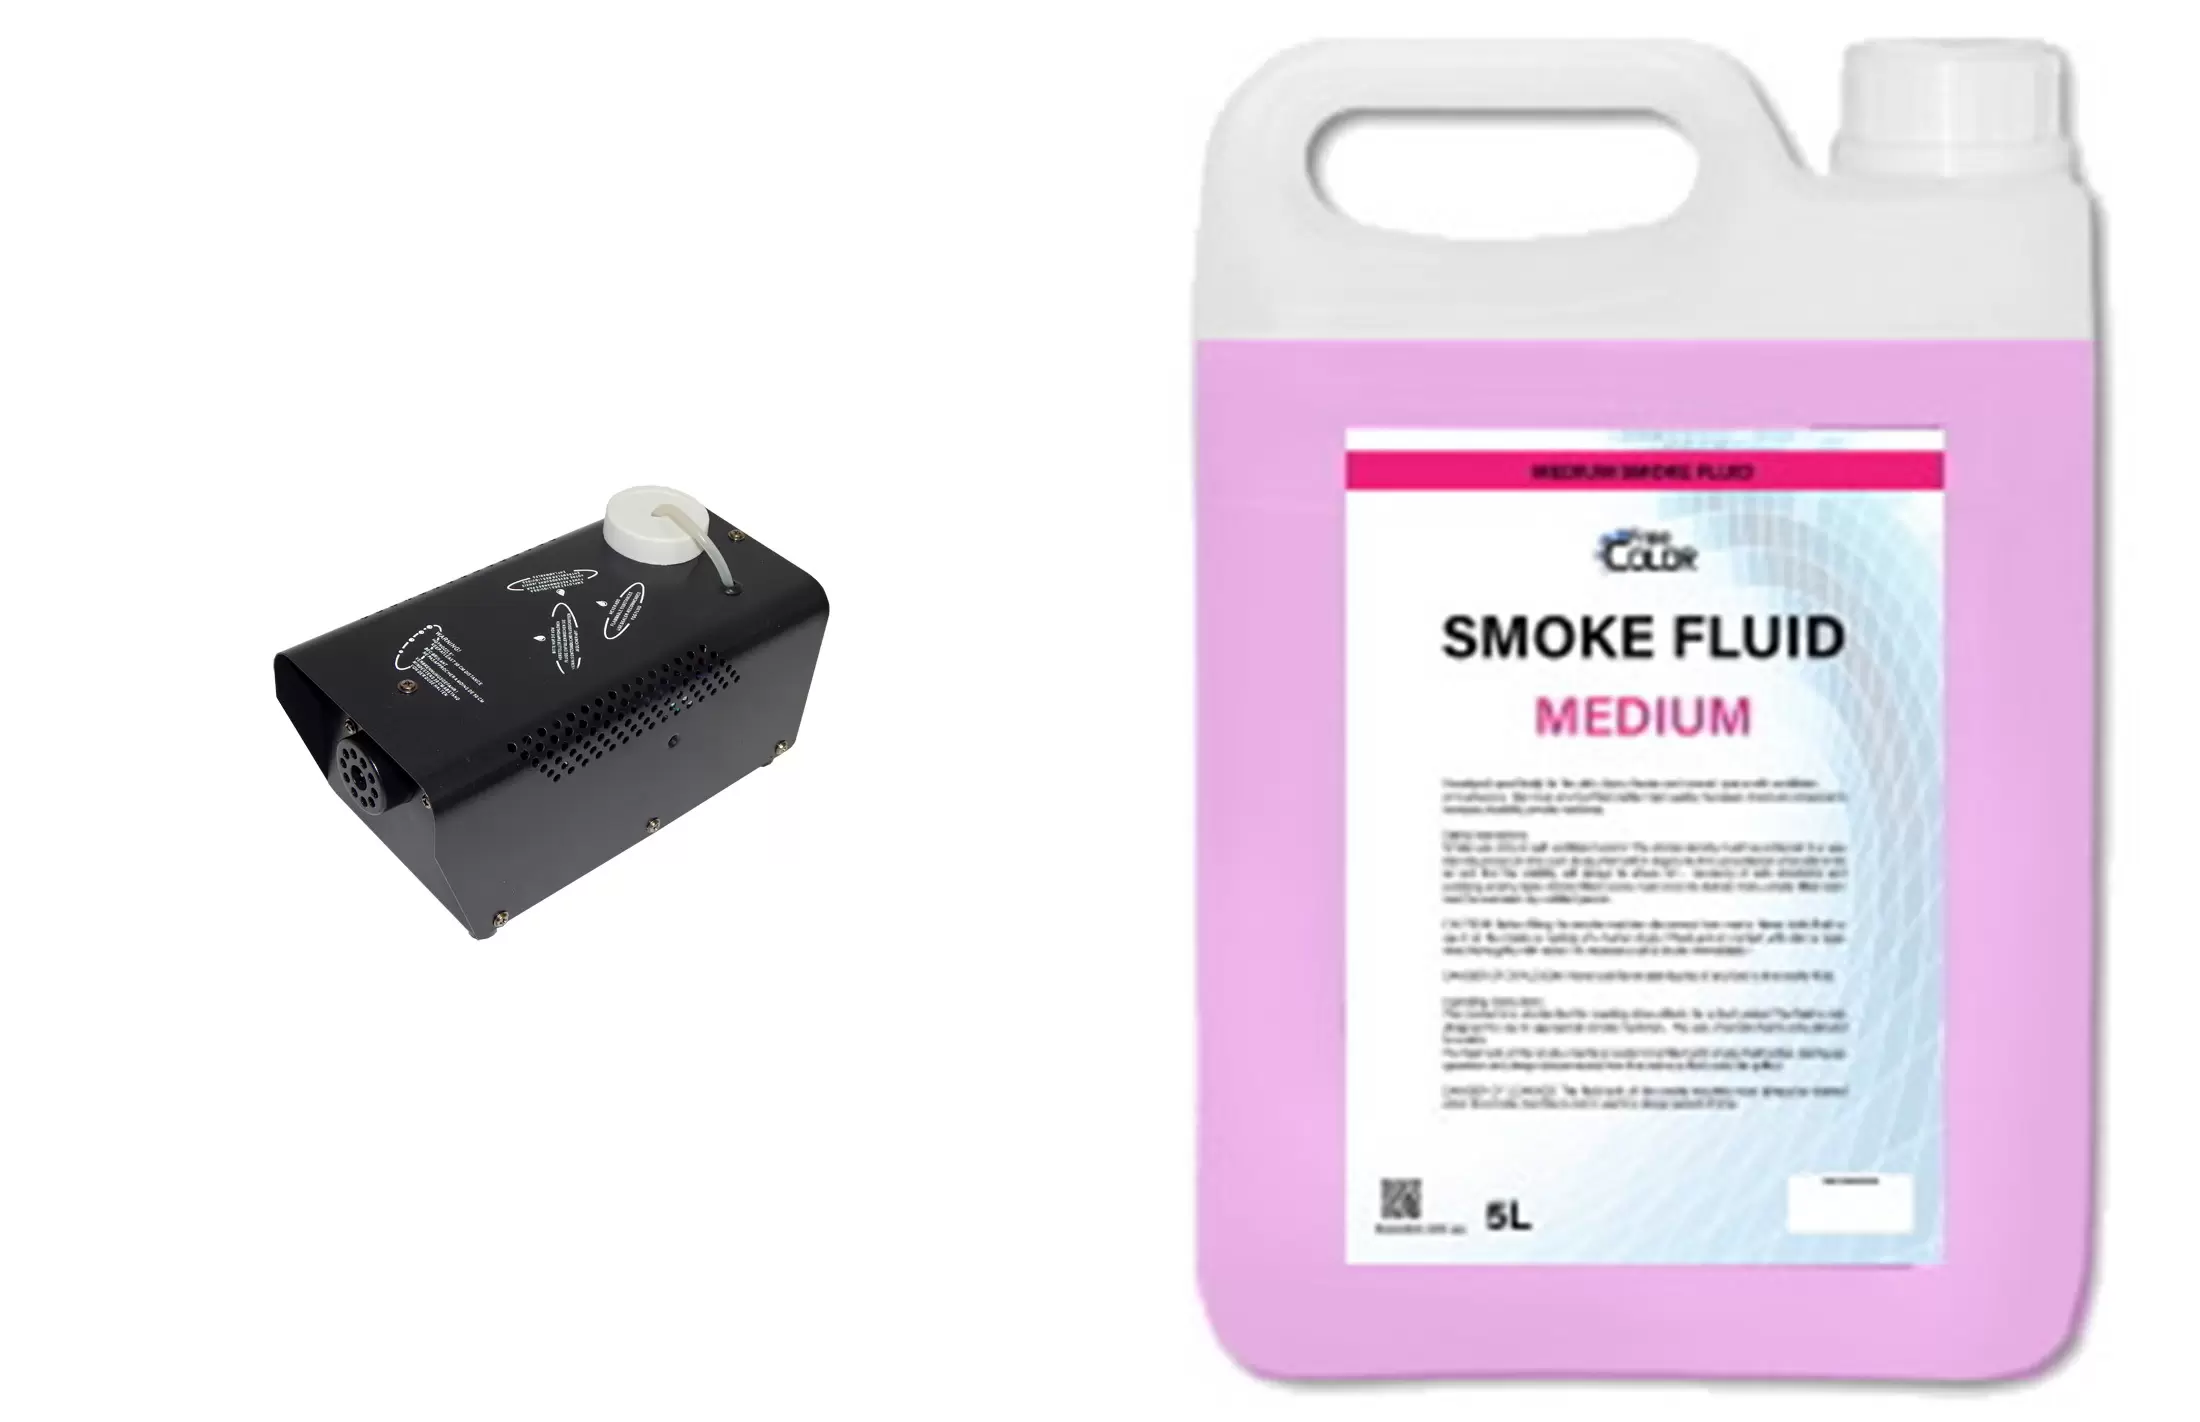 Дымогенератор Free Color SM04 и 4 канистры дыма FREE COLOR SMOKE FLUID MEDIUM 5L